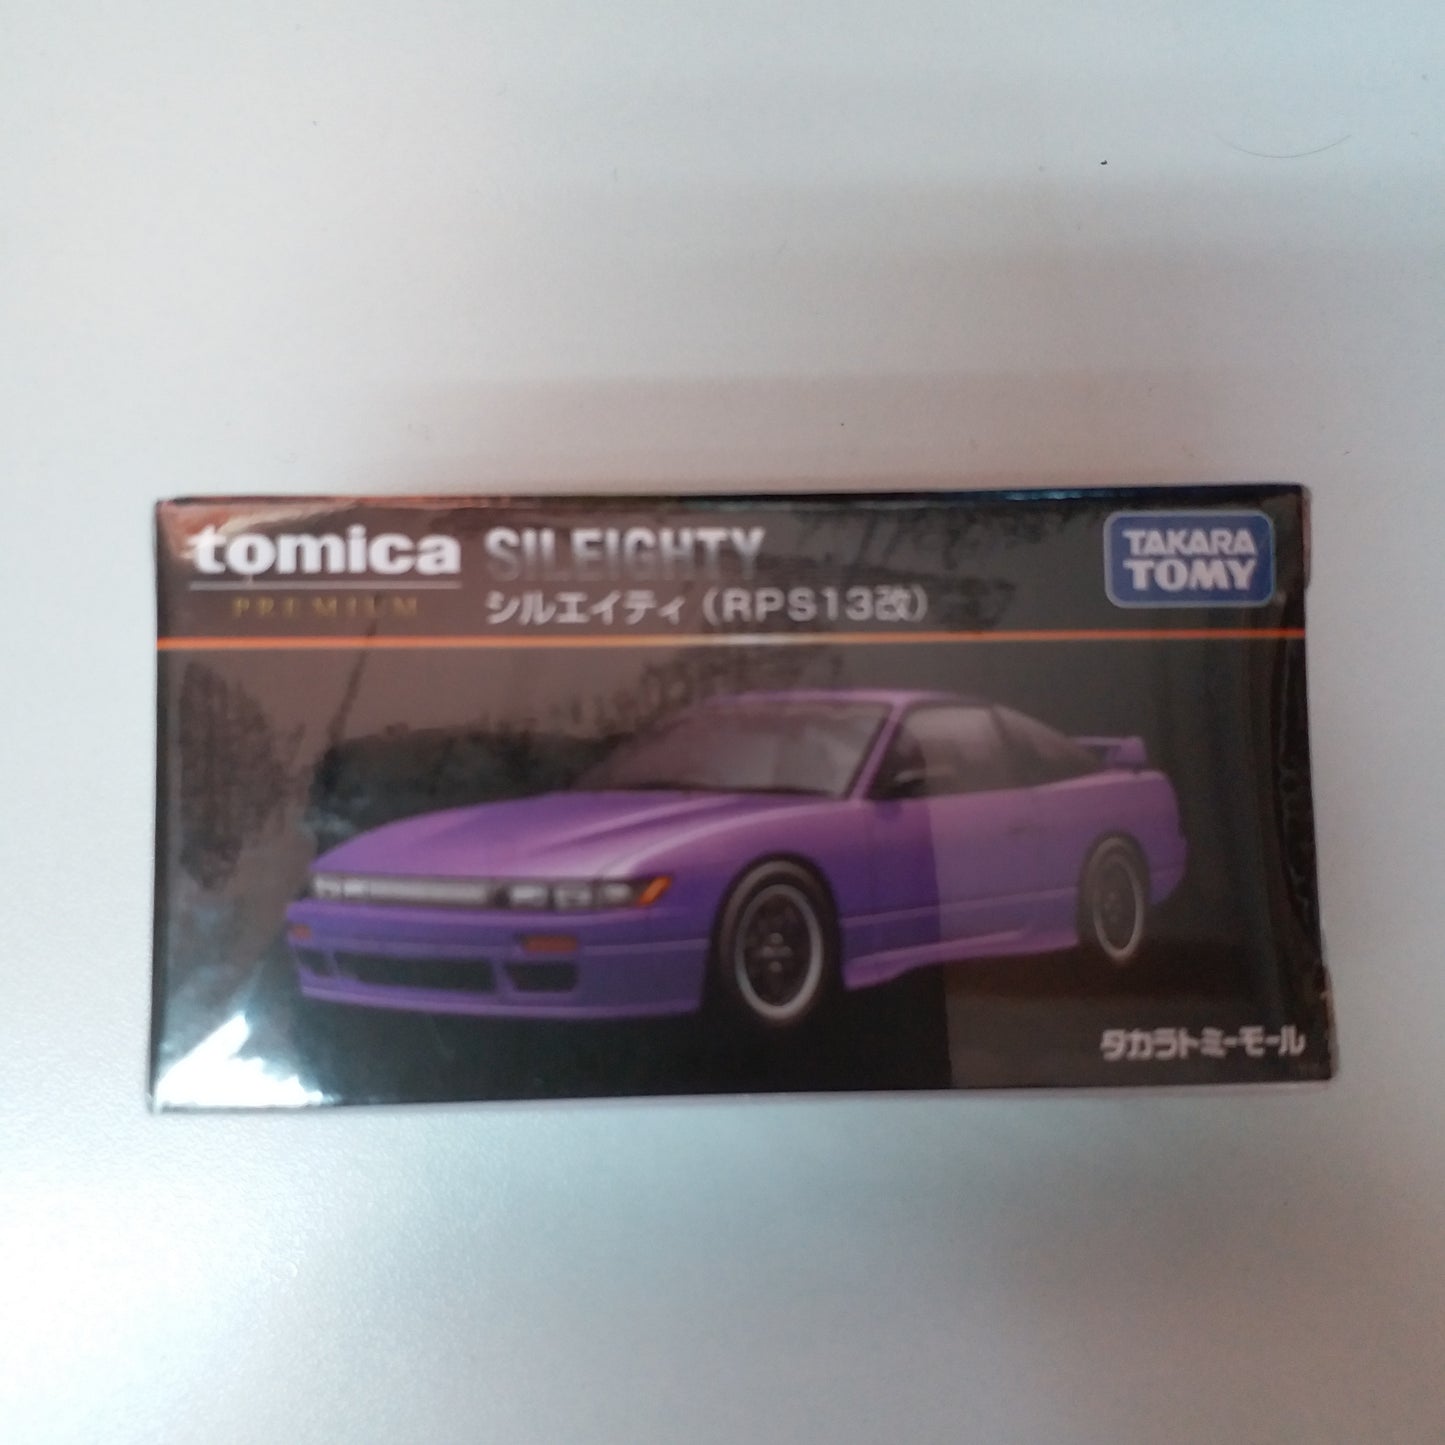 Takara Tomy Mall MALL Original Tomica Premium  1:62 SCALE Nissan Sileighty (RPS13 Kai)